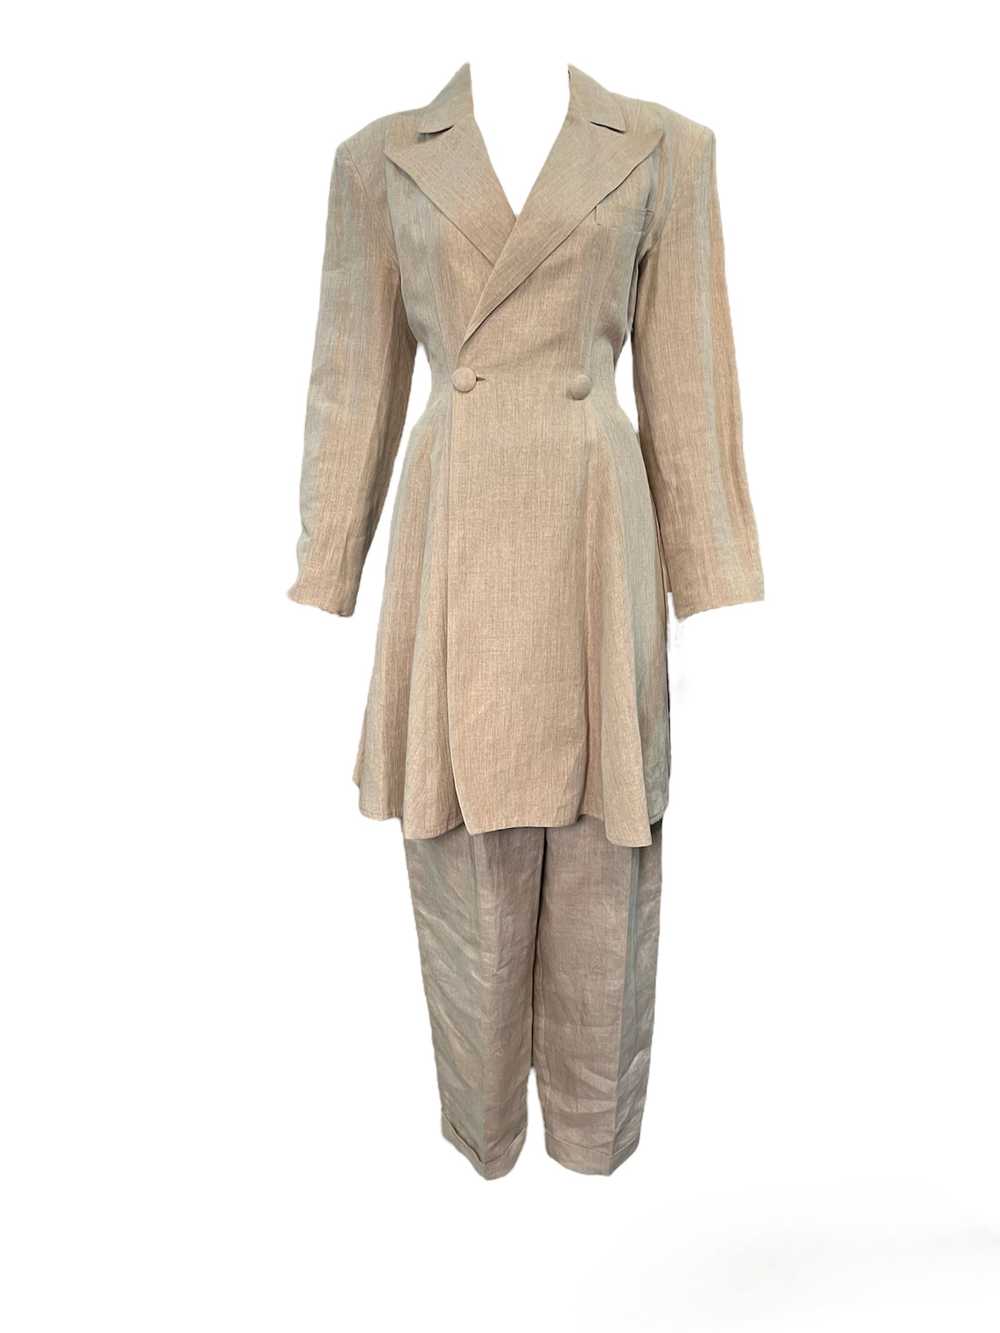 Patrick Kelly 80s Beige Linen Safari Suit - image 1